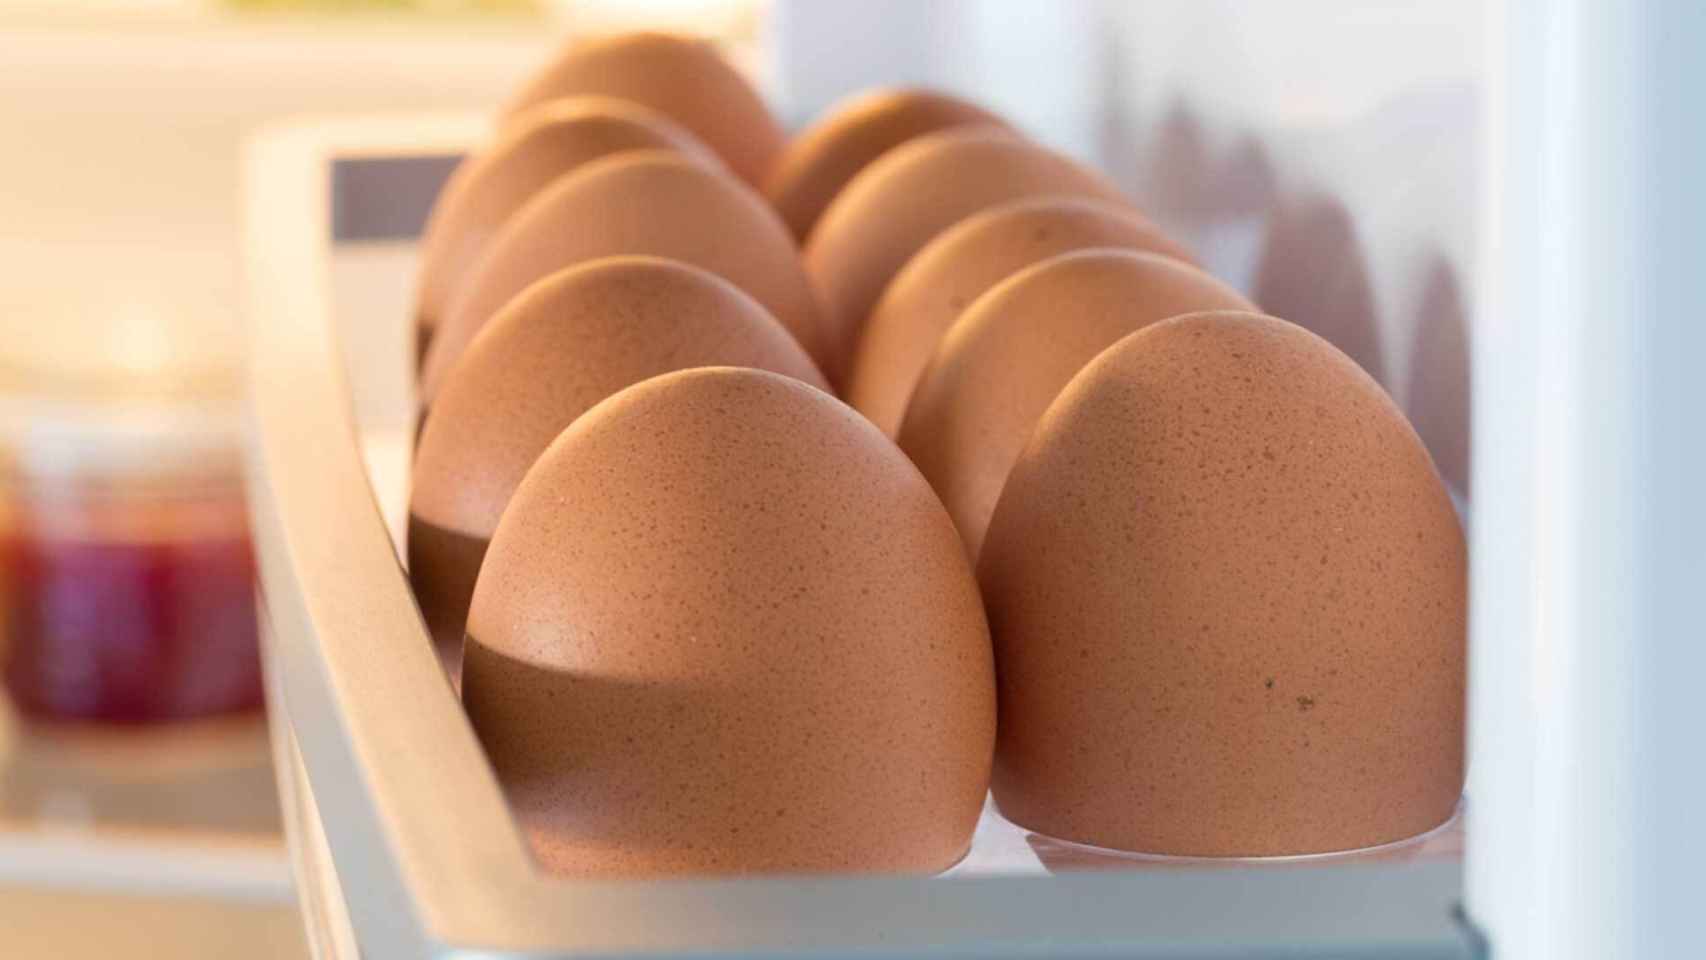 Unos huevos colocados en la huevera de la puerta del frigo.